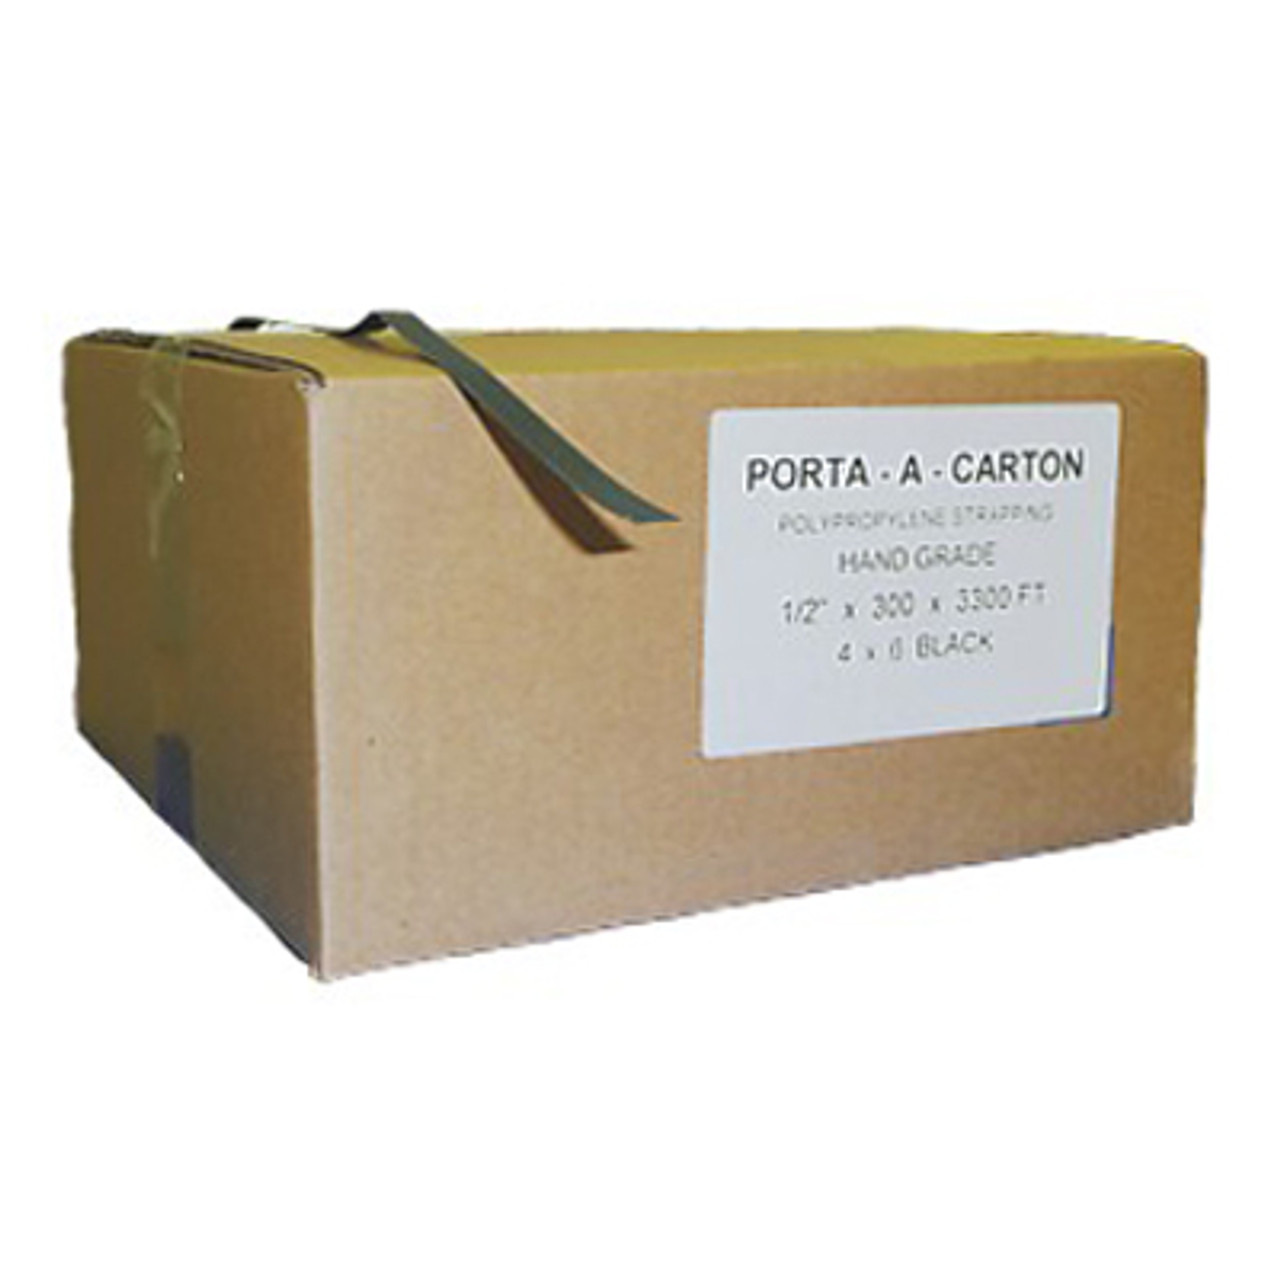 Porta Carton Polypropylene Strapping 1/2" x 3000'